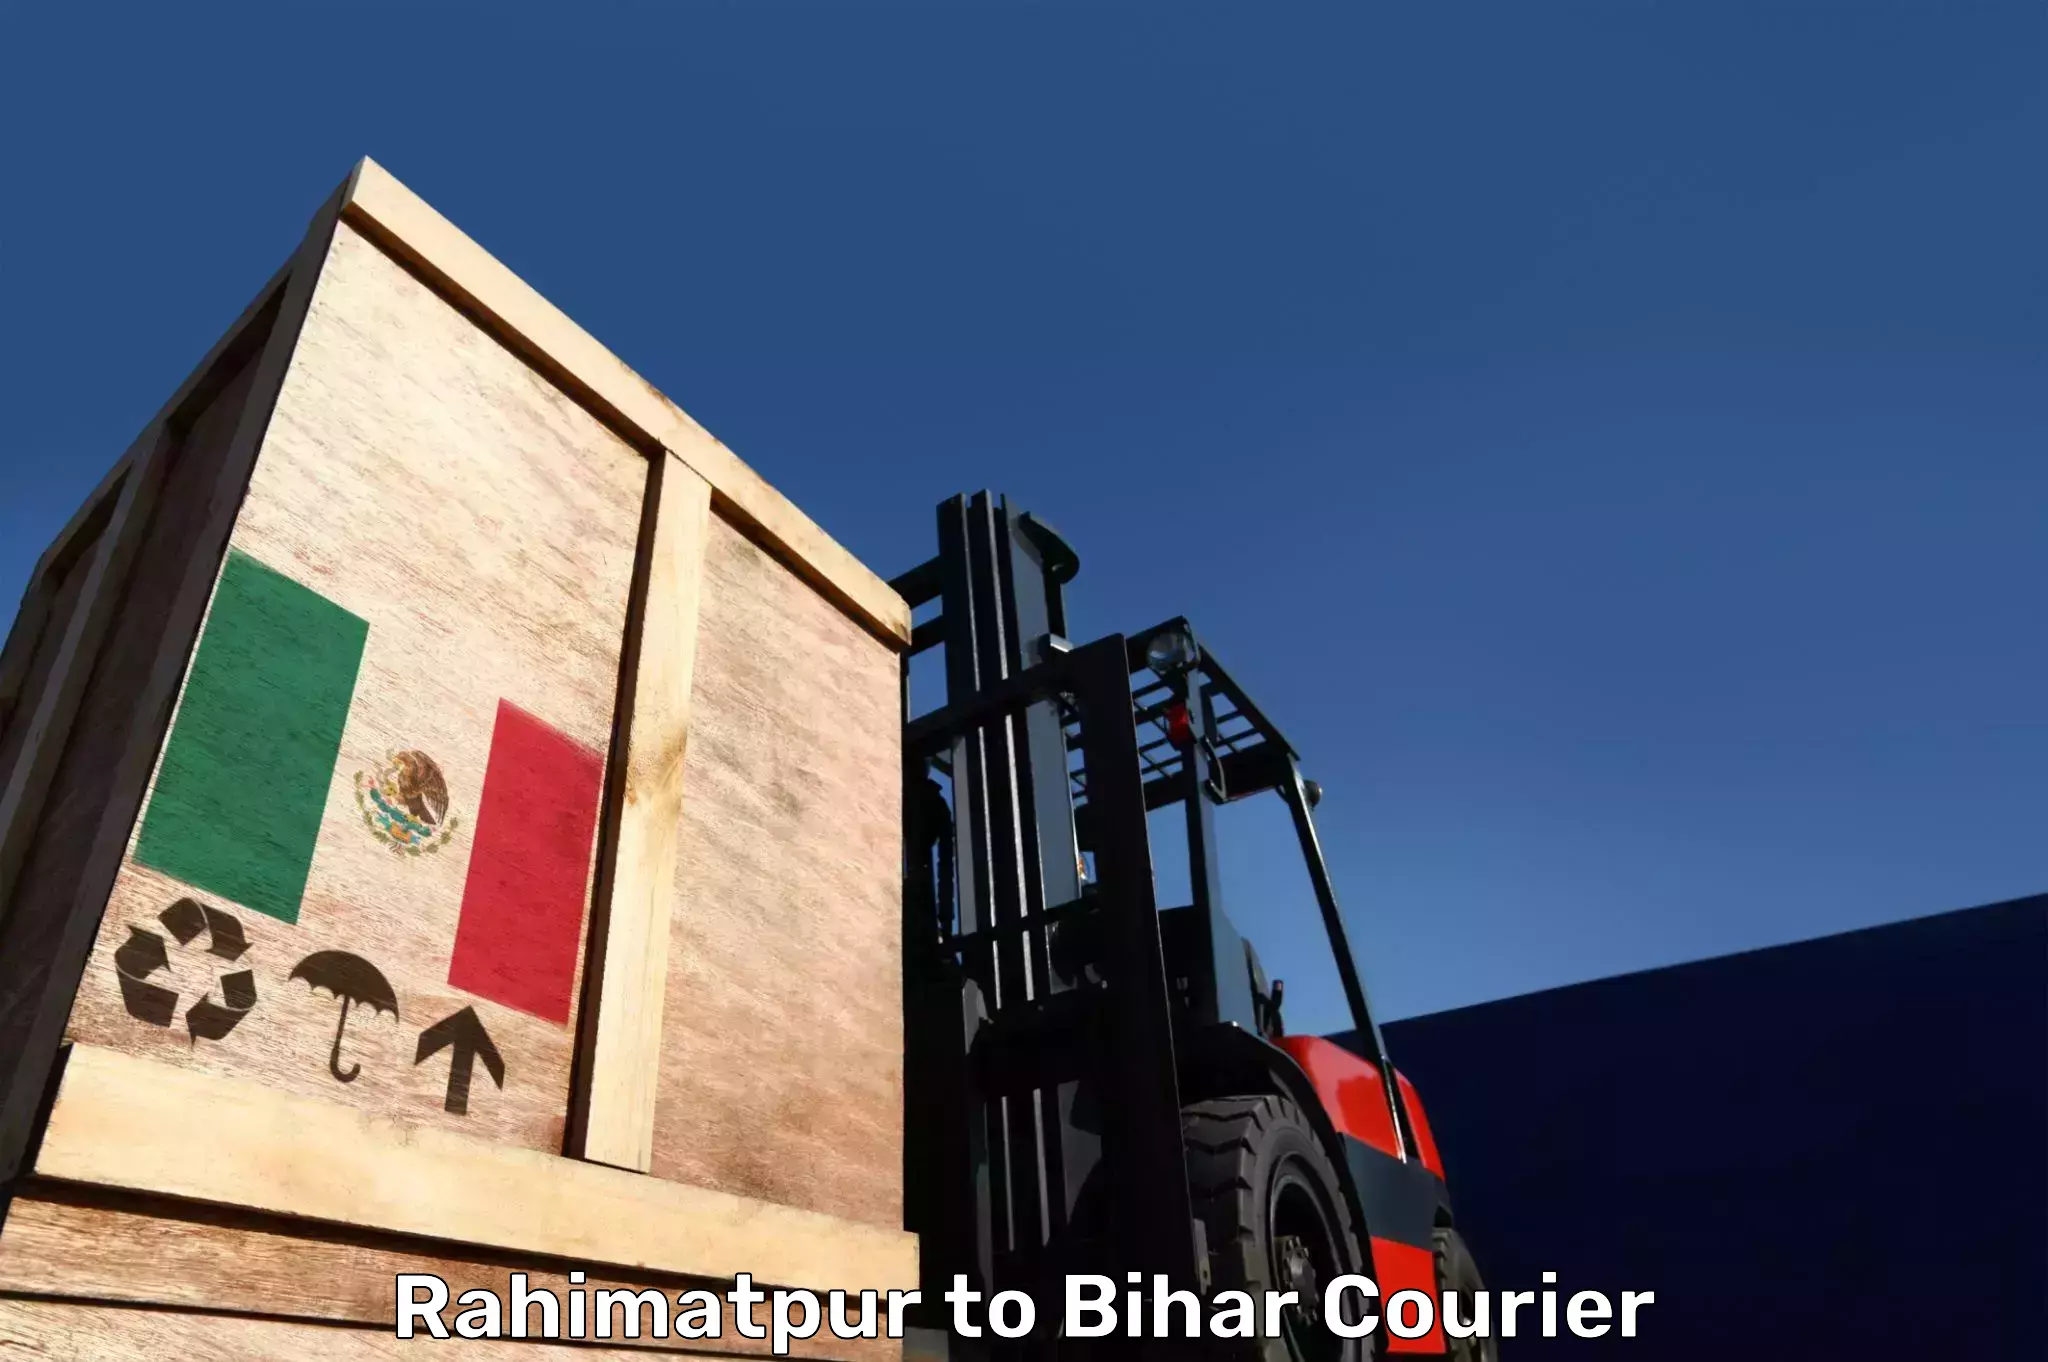 Baggage shipping schedule Rahimatpur to Bihar